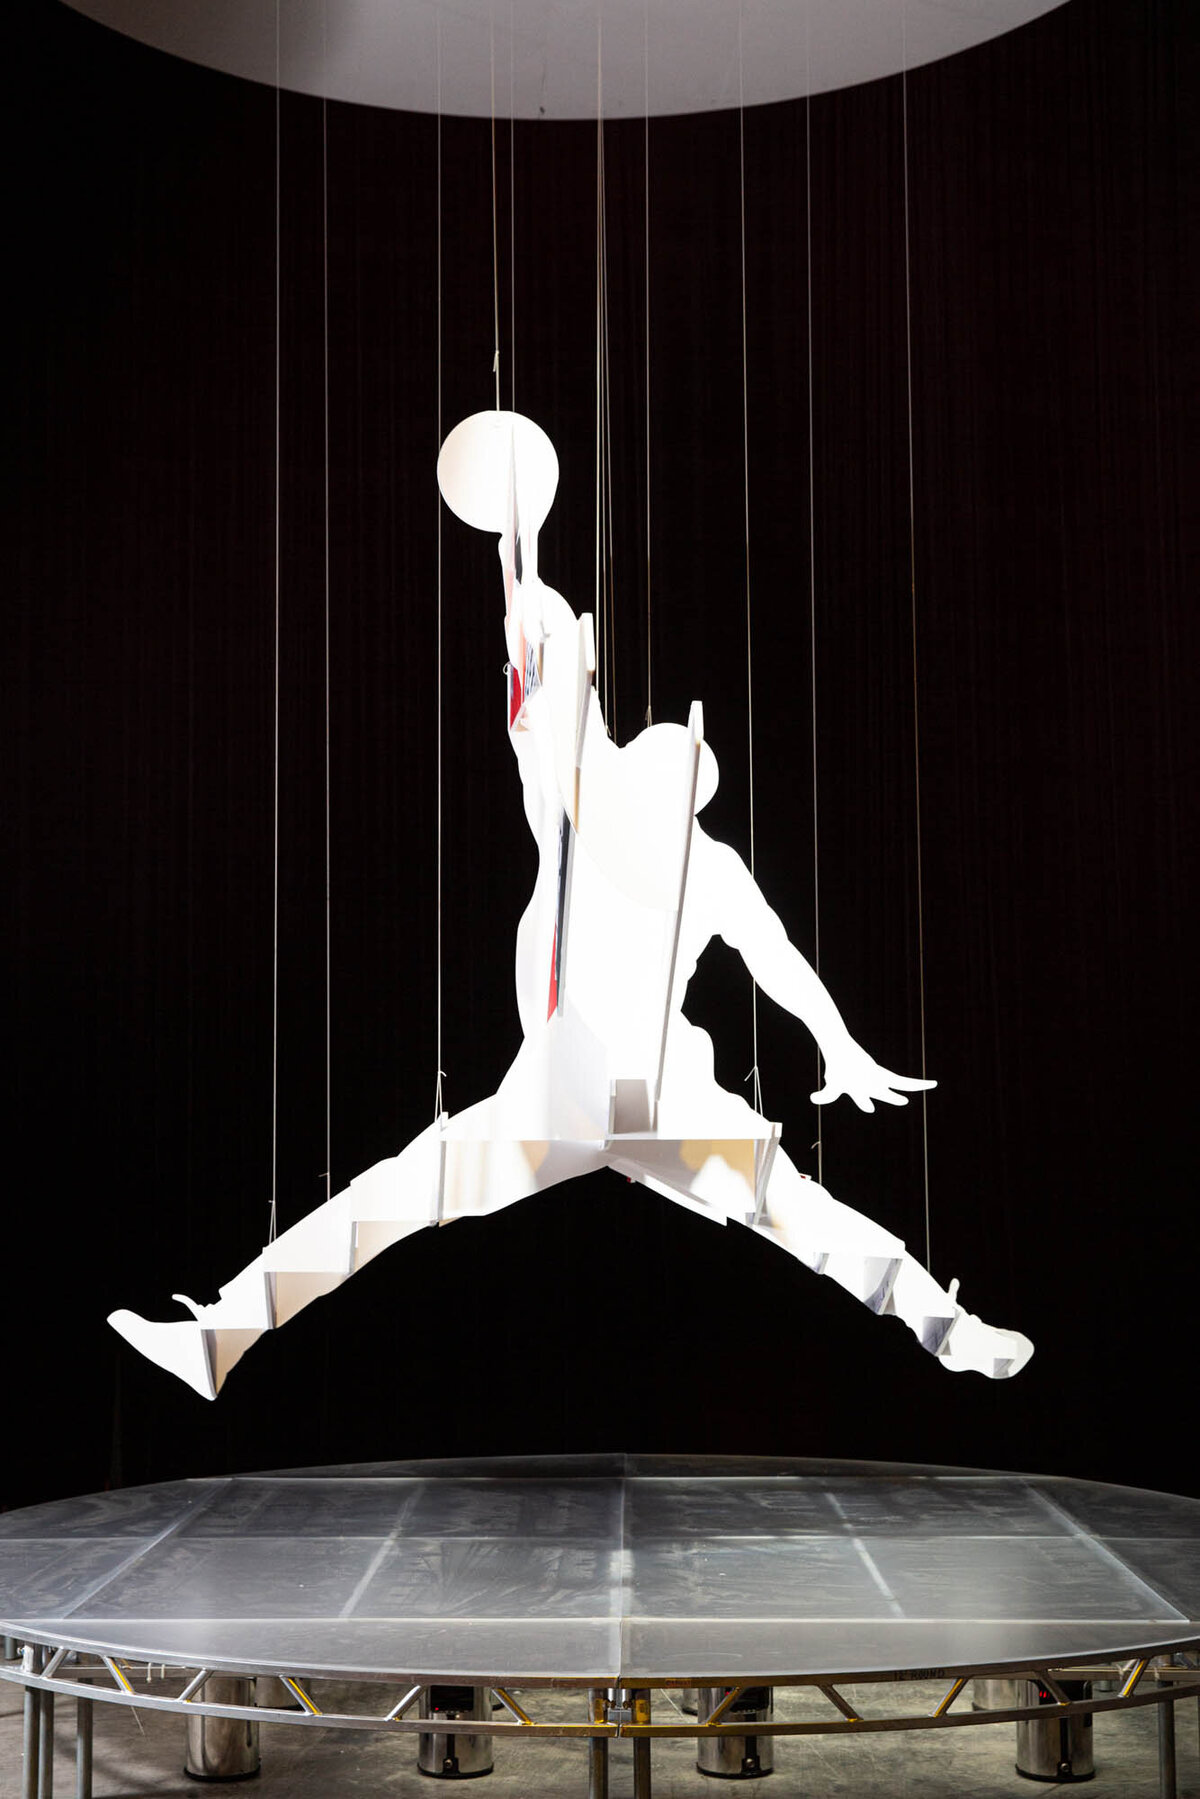 Evoke_Nike_Michael Jordan_Chicago_All Stars 2020_Theo Milo10